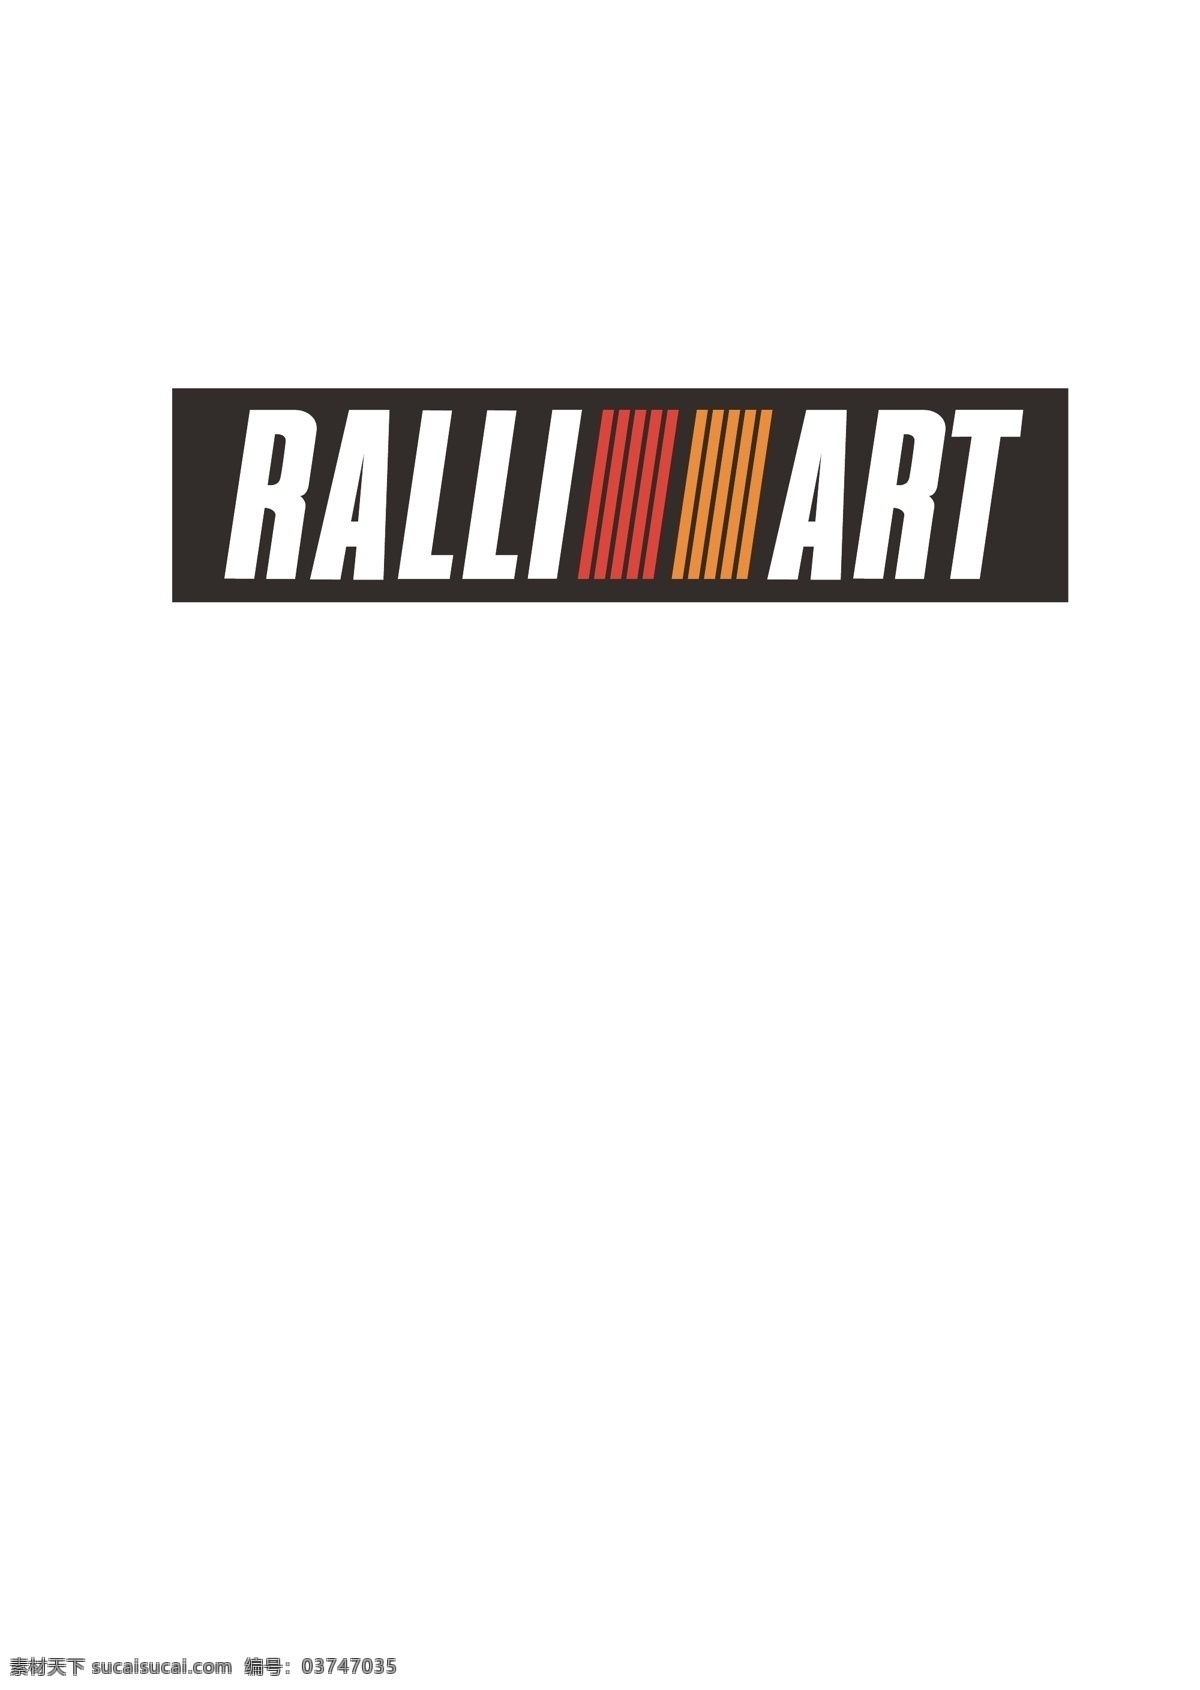 三菱 ralliart 车标 赛车 拉力车 标志图标 其他图标